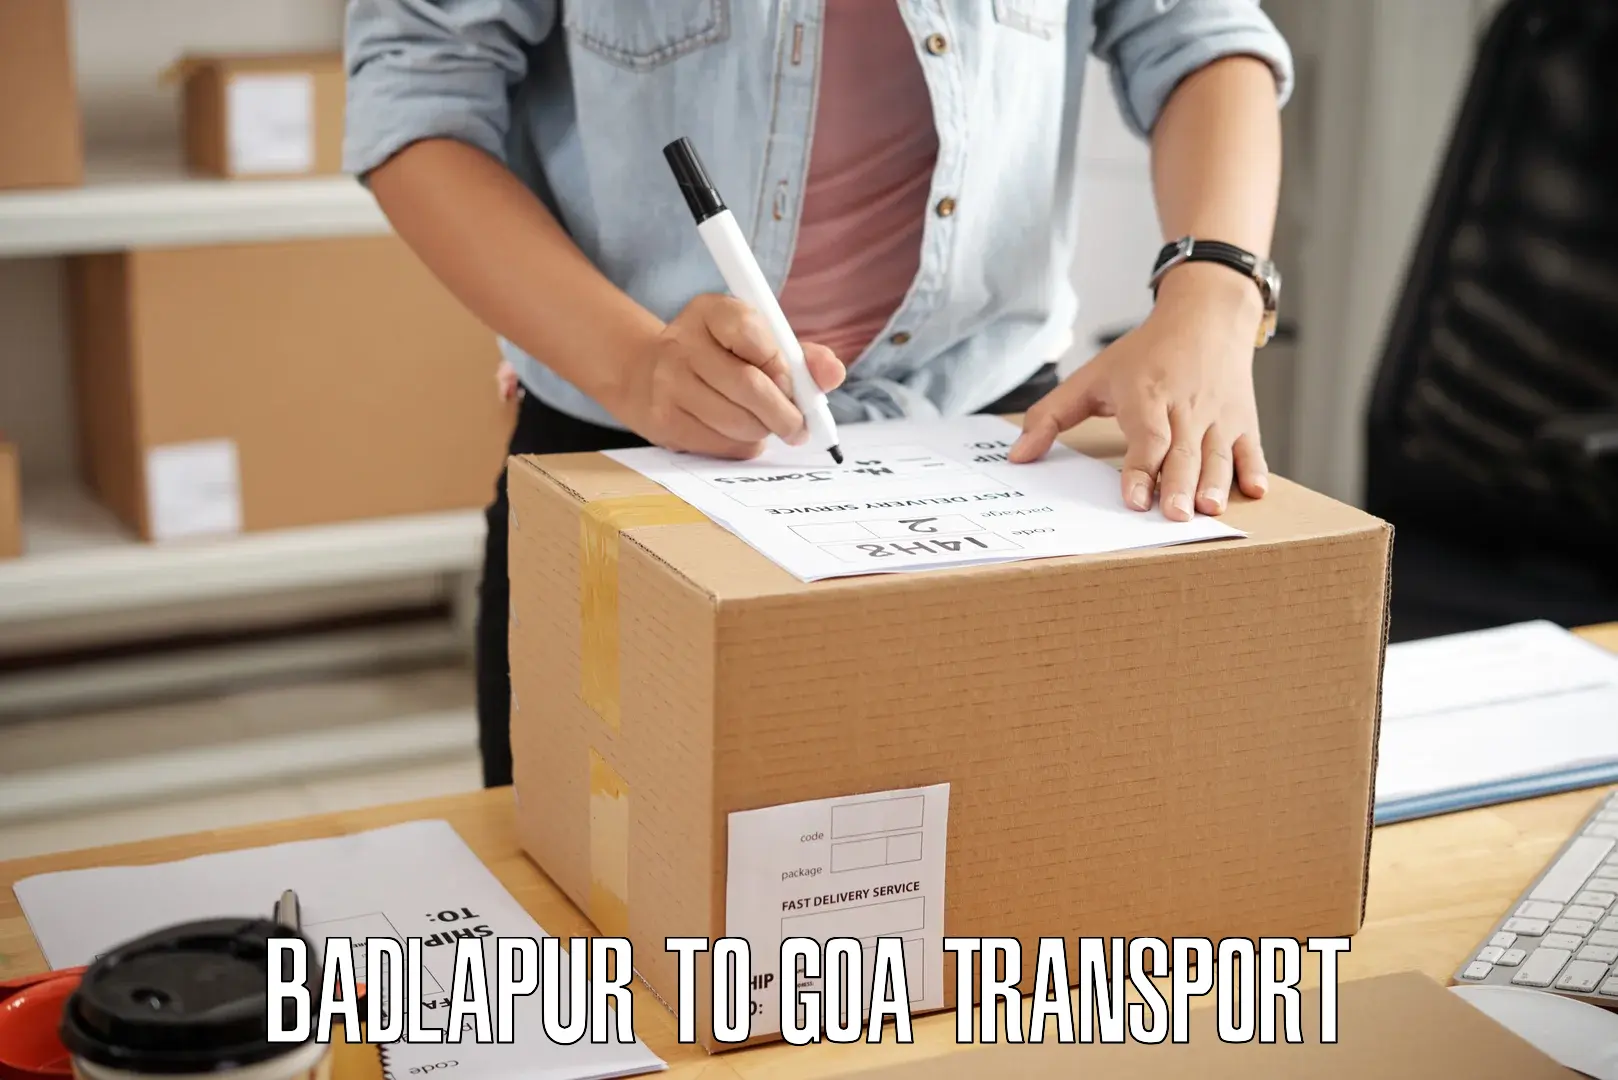 Daily parcel service transport Badlapur to Panaji